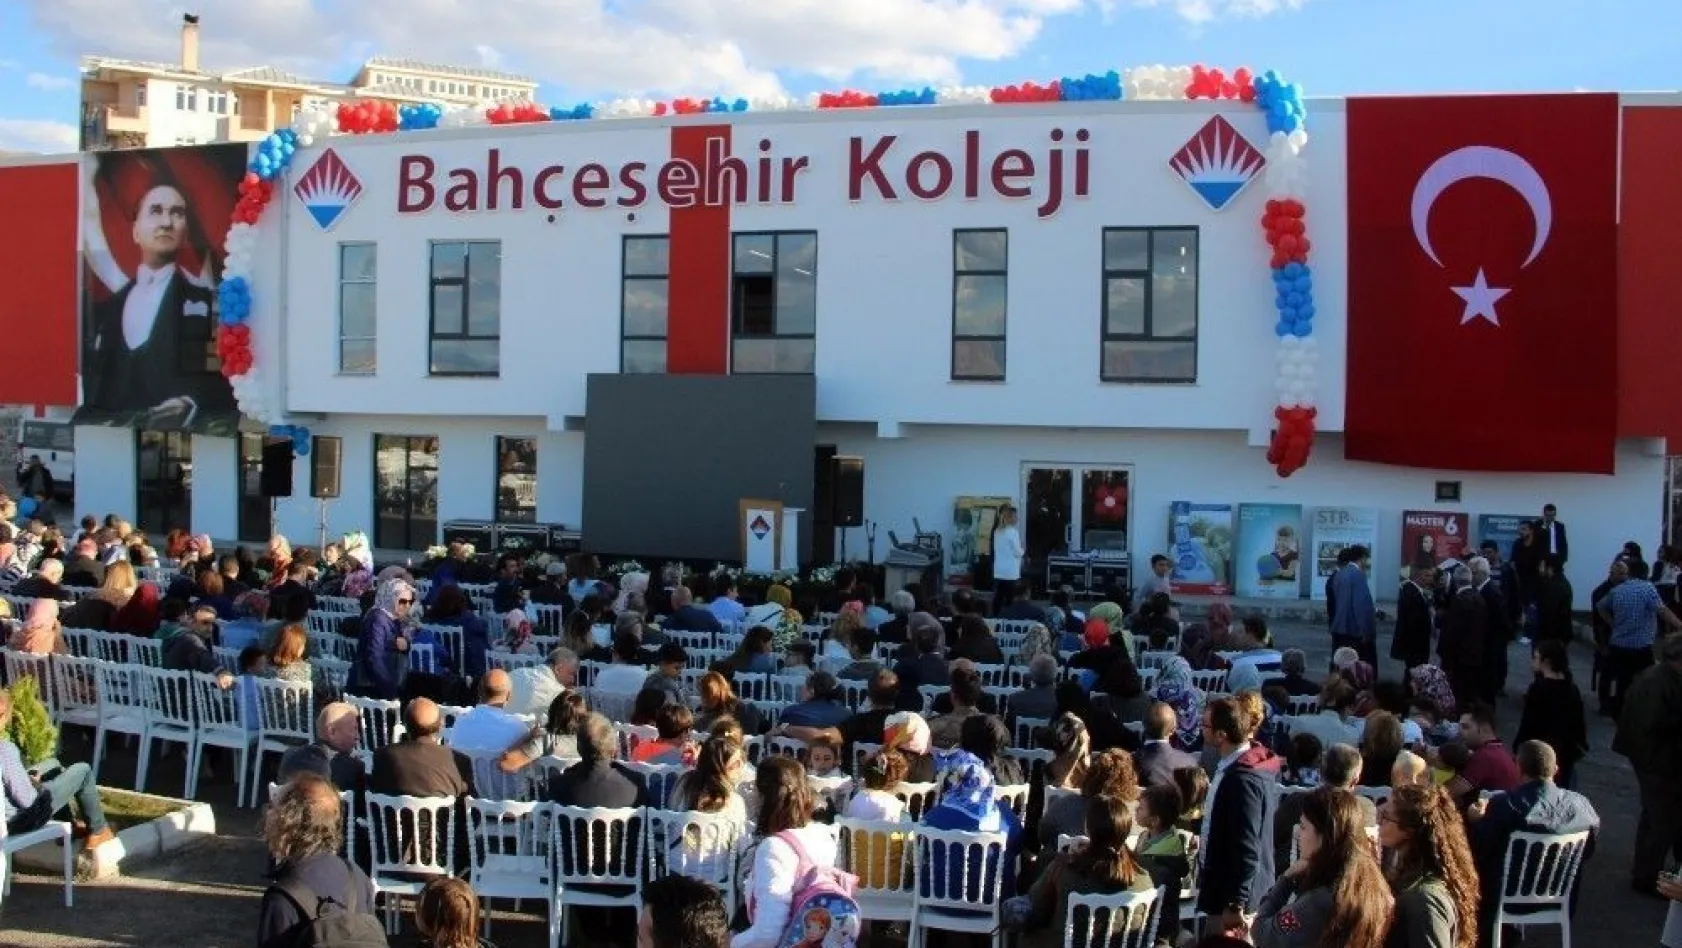 Bahçeşehir Koleji Erzurum Kampüsü törenle açıldı
